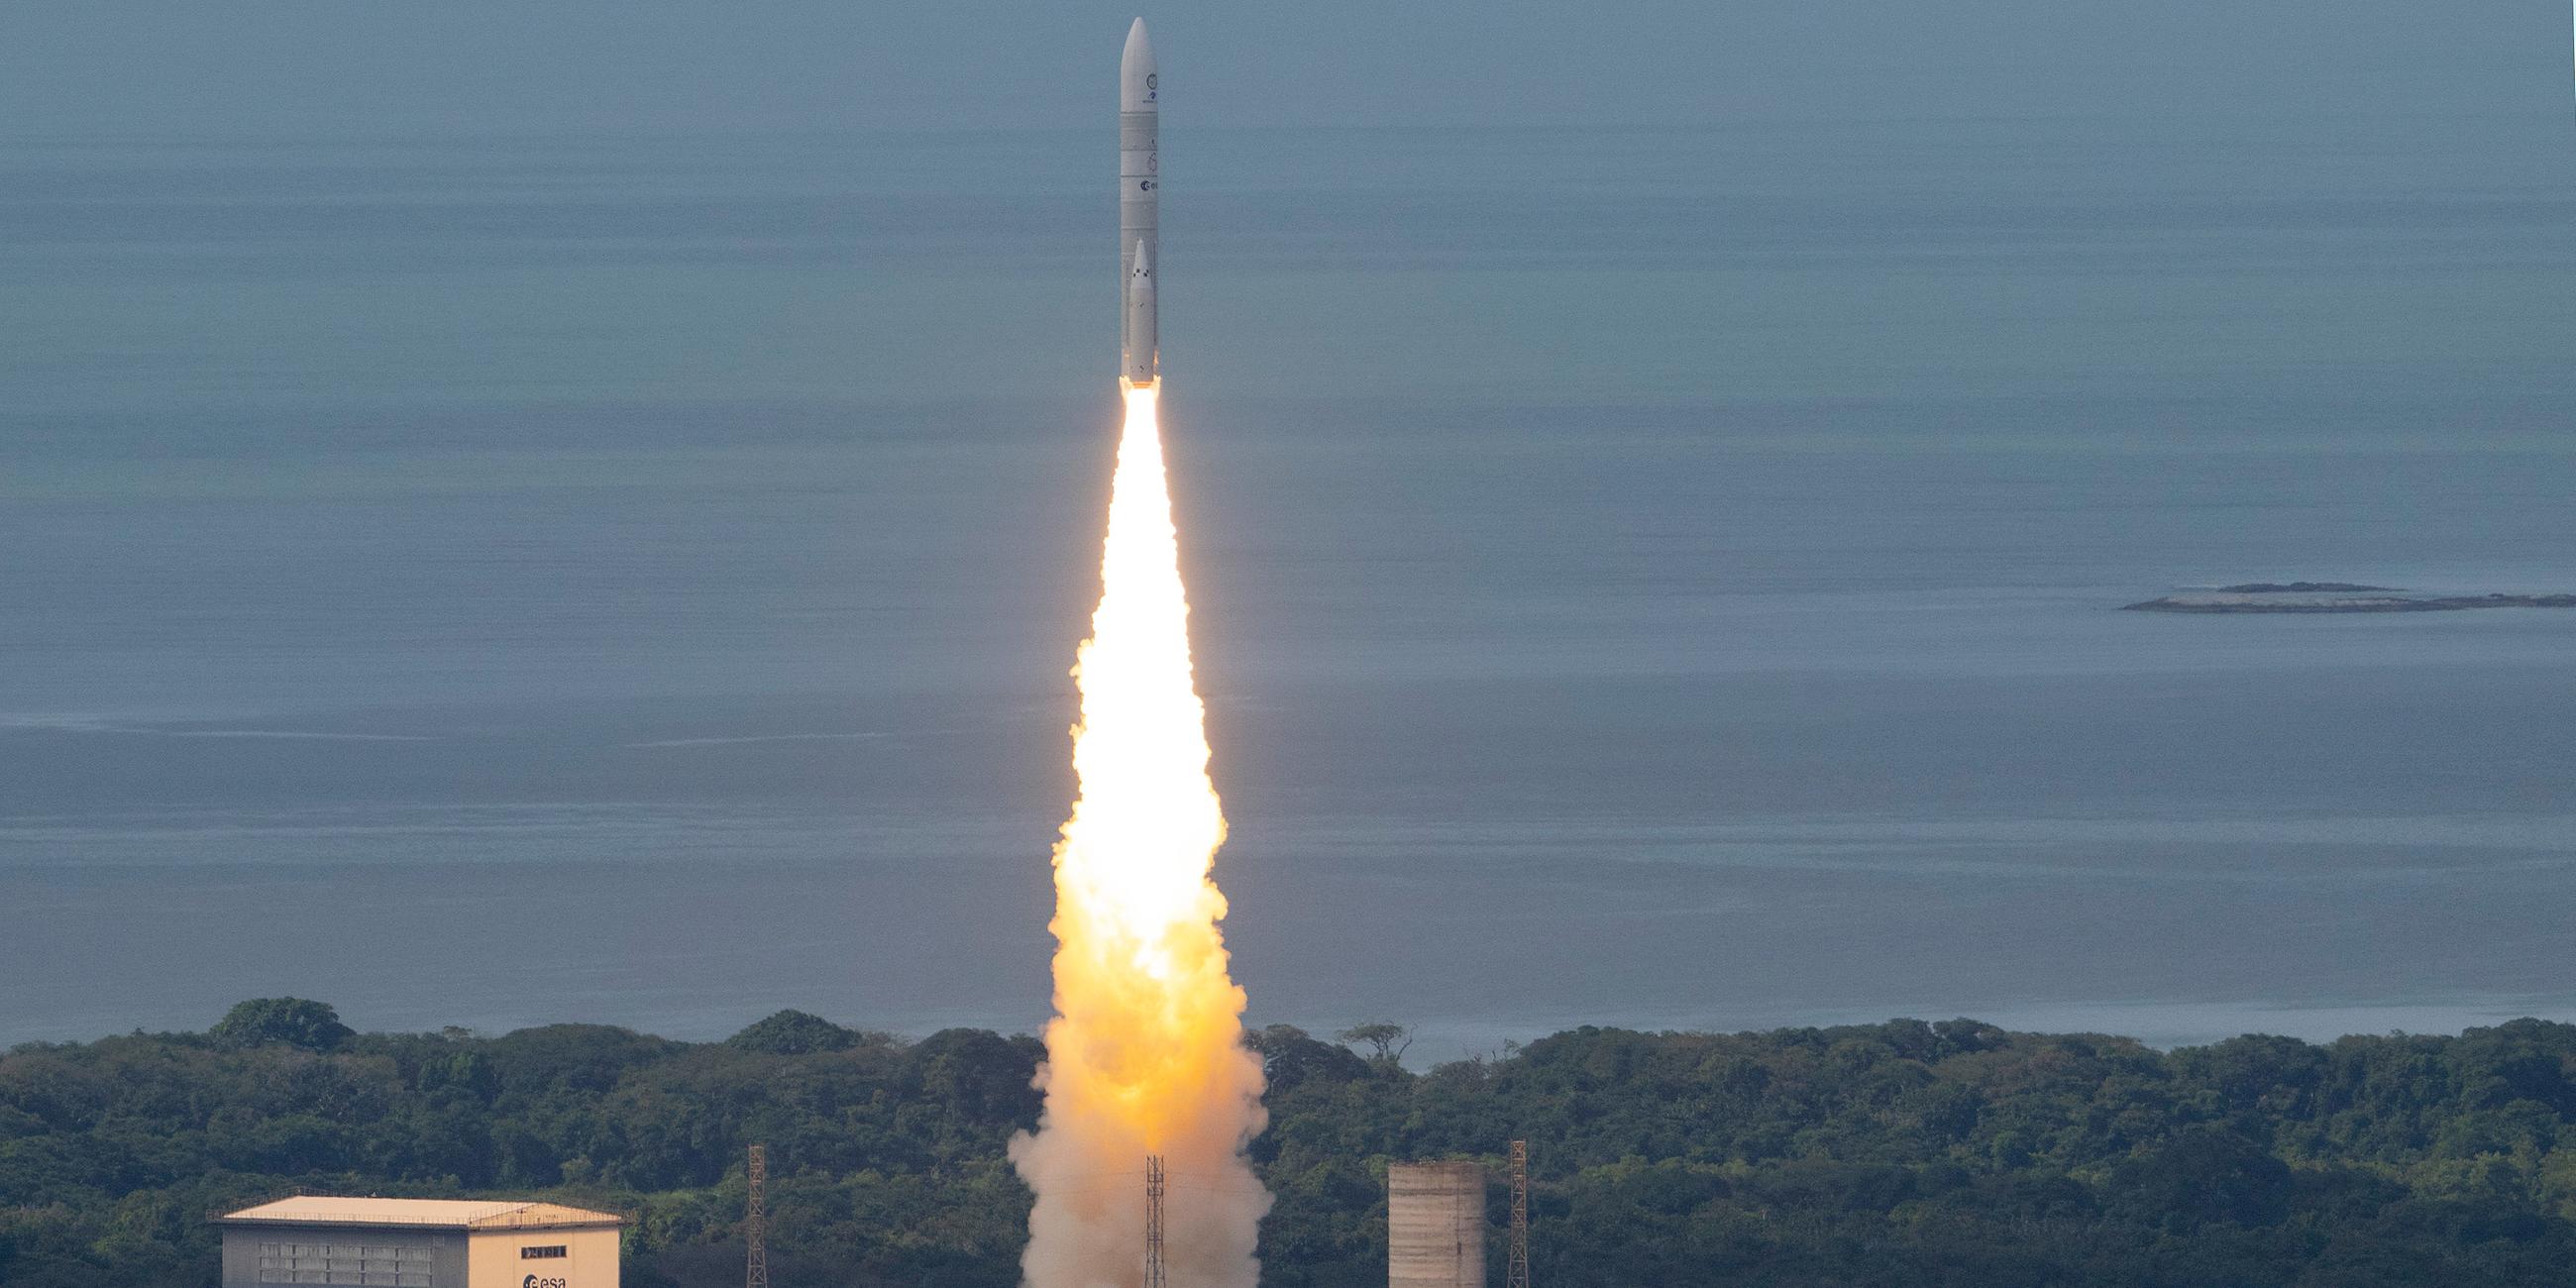 Die Satellitenträgerrakete Ariane 6 der Europäischen Weltraumorganisation (ESA) ist vor ihrem Jungfernstart im Raumfahrtzentrum Guayana in Kourou, Französisch-Guayana